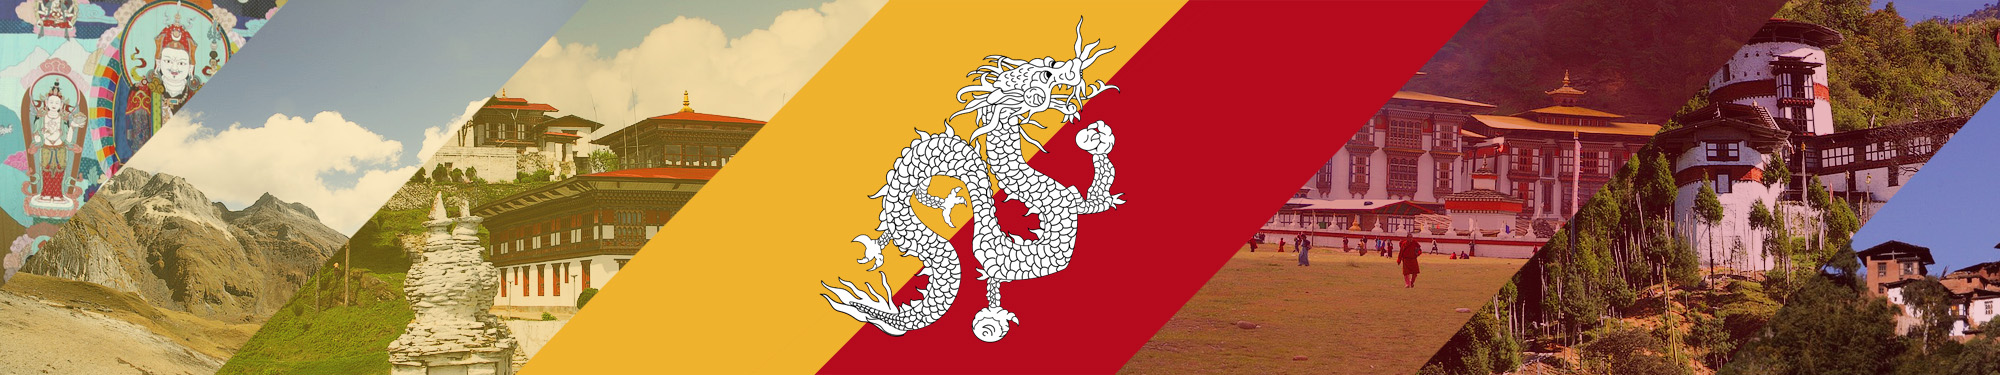 Разработка сайта департамента по туризму Бутана